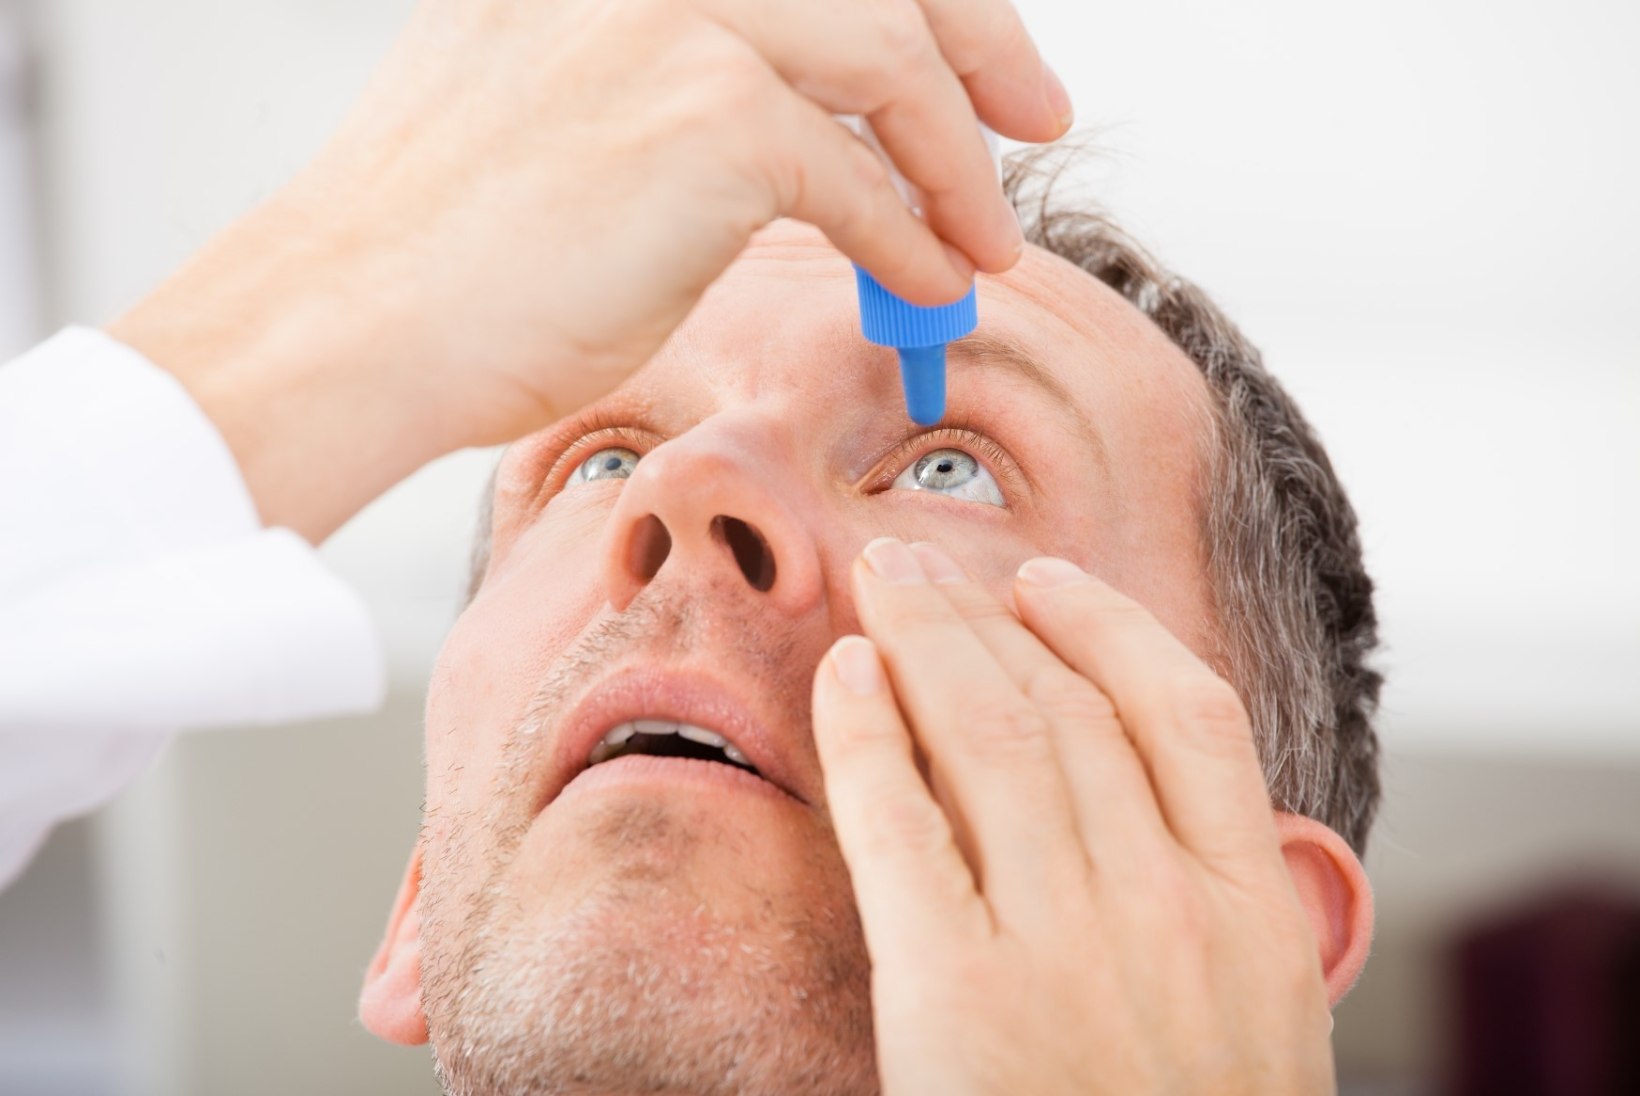 Kolm harjutust kontorirottidele kuiva silma sündroomi ennetamiseks